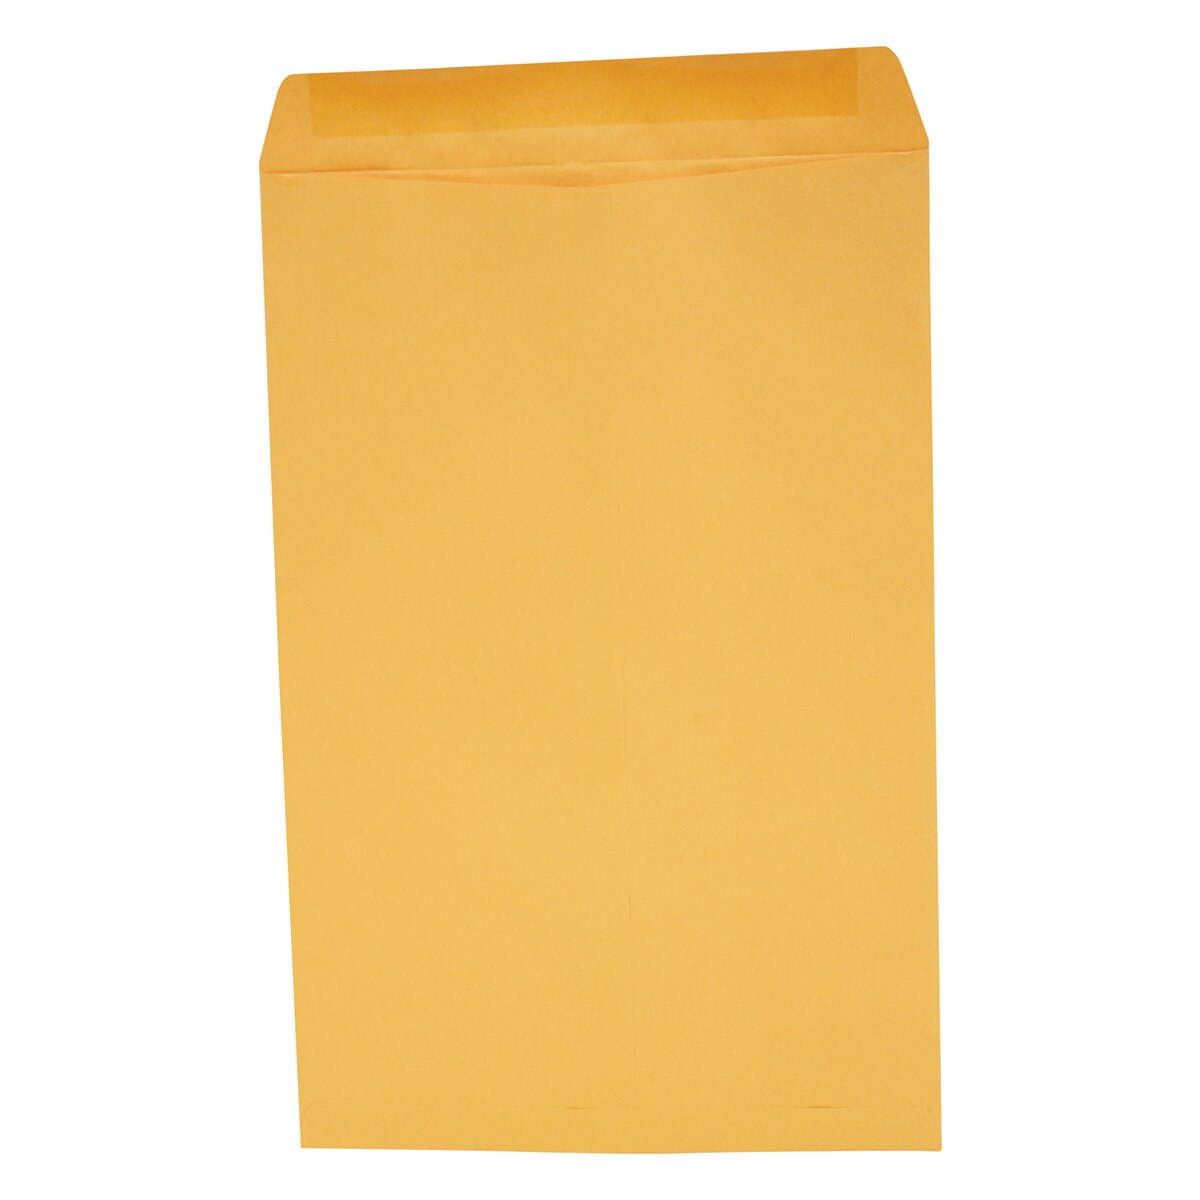 Ampad sobre bolsa oficio amarillo cierre engomado